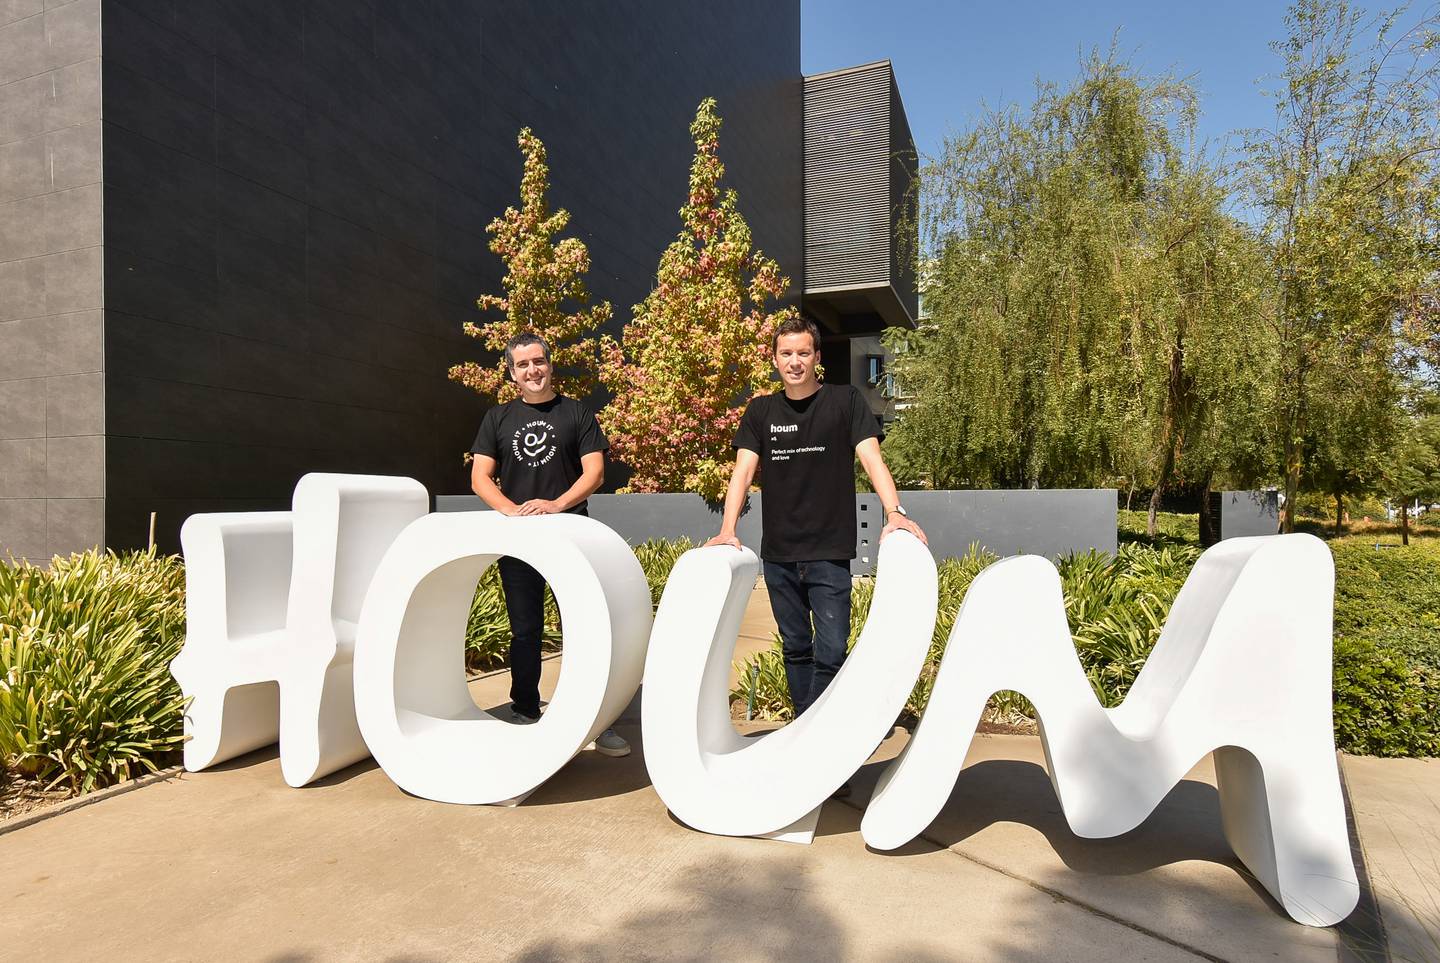 La startup chilena Houm fue elegida como  uno de los "Pioneros tecnológicos" por el World Economic Forum de este 2022. Foto: Houm